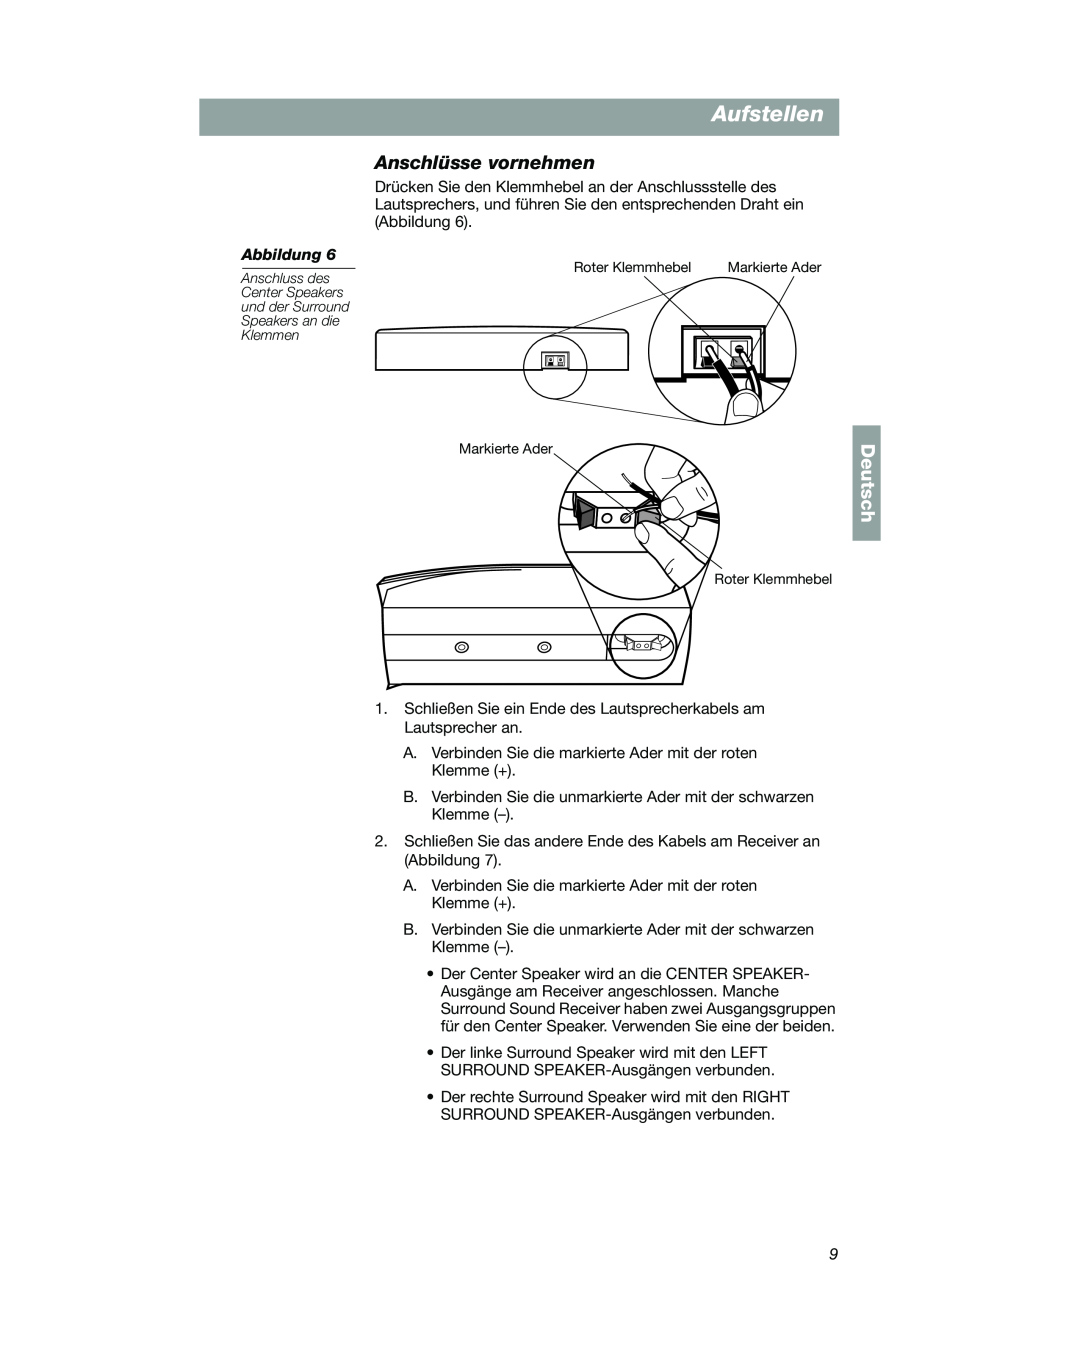 Bose VCS-10 manual Anschlüsse vornehmen, Aufstellen, Deutsch, Markierte Ader Roter Klemmhebel 